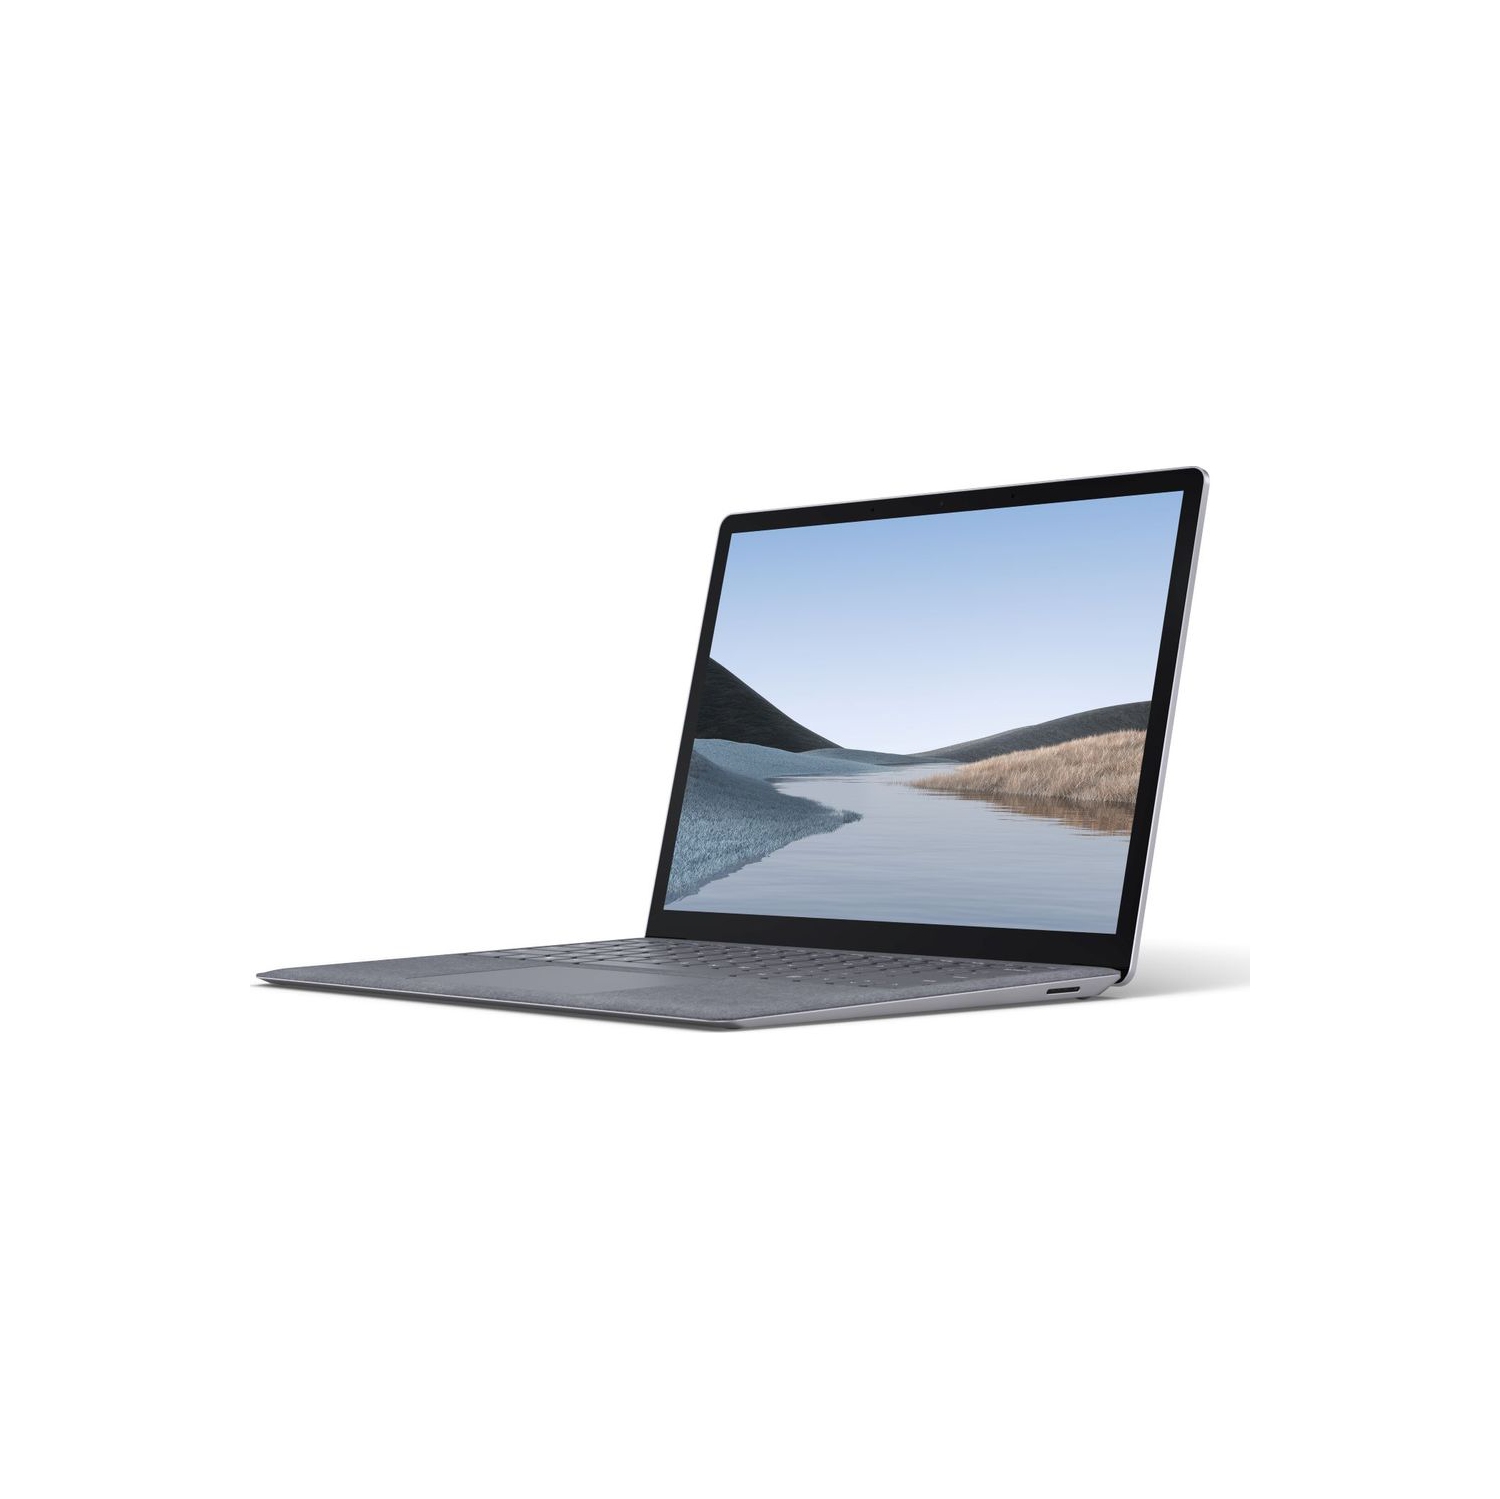 Refurbished (Good) - Microsoft Surface Laptop 3 13.5